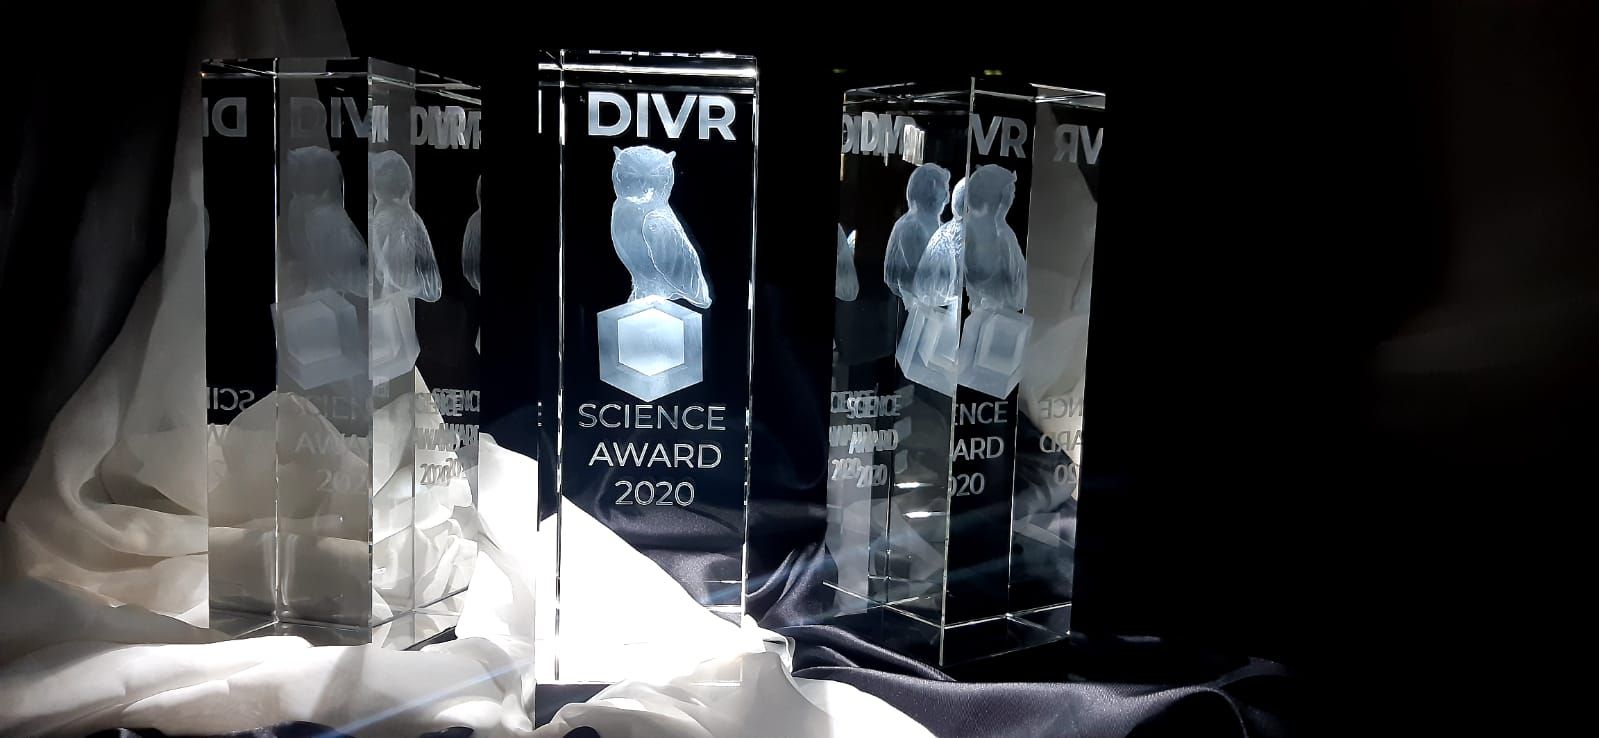 DIVR Science Award